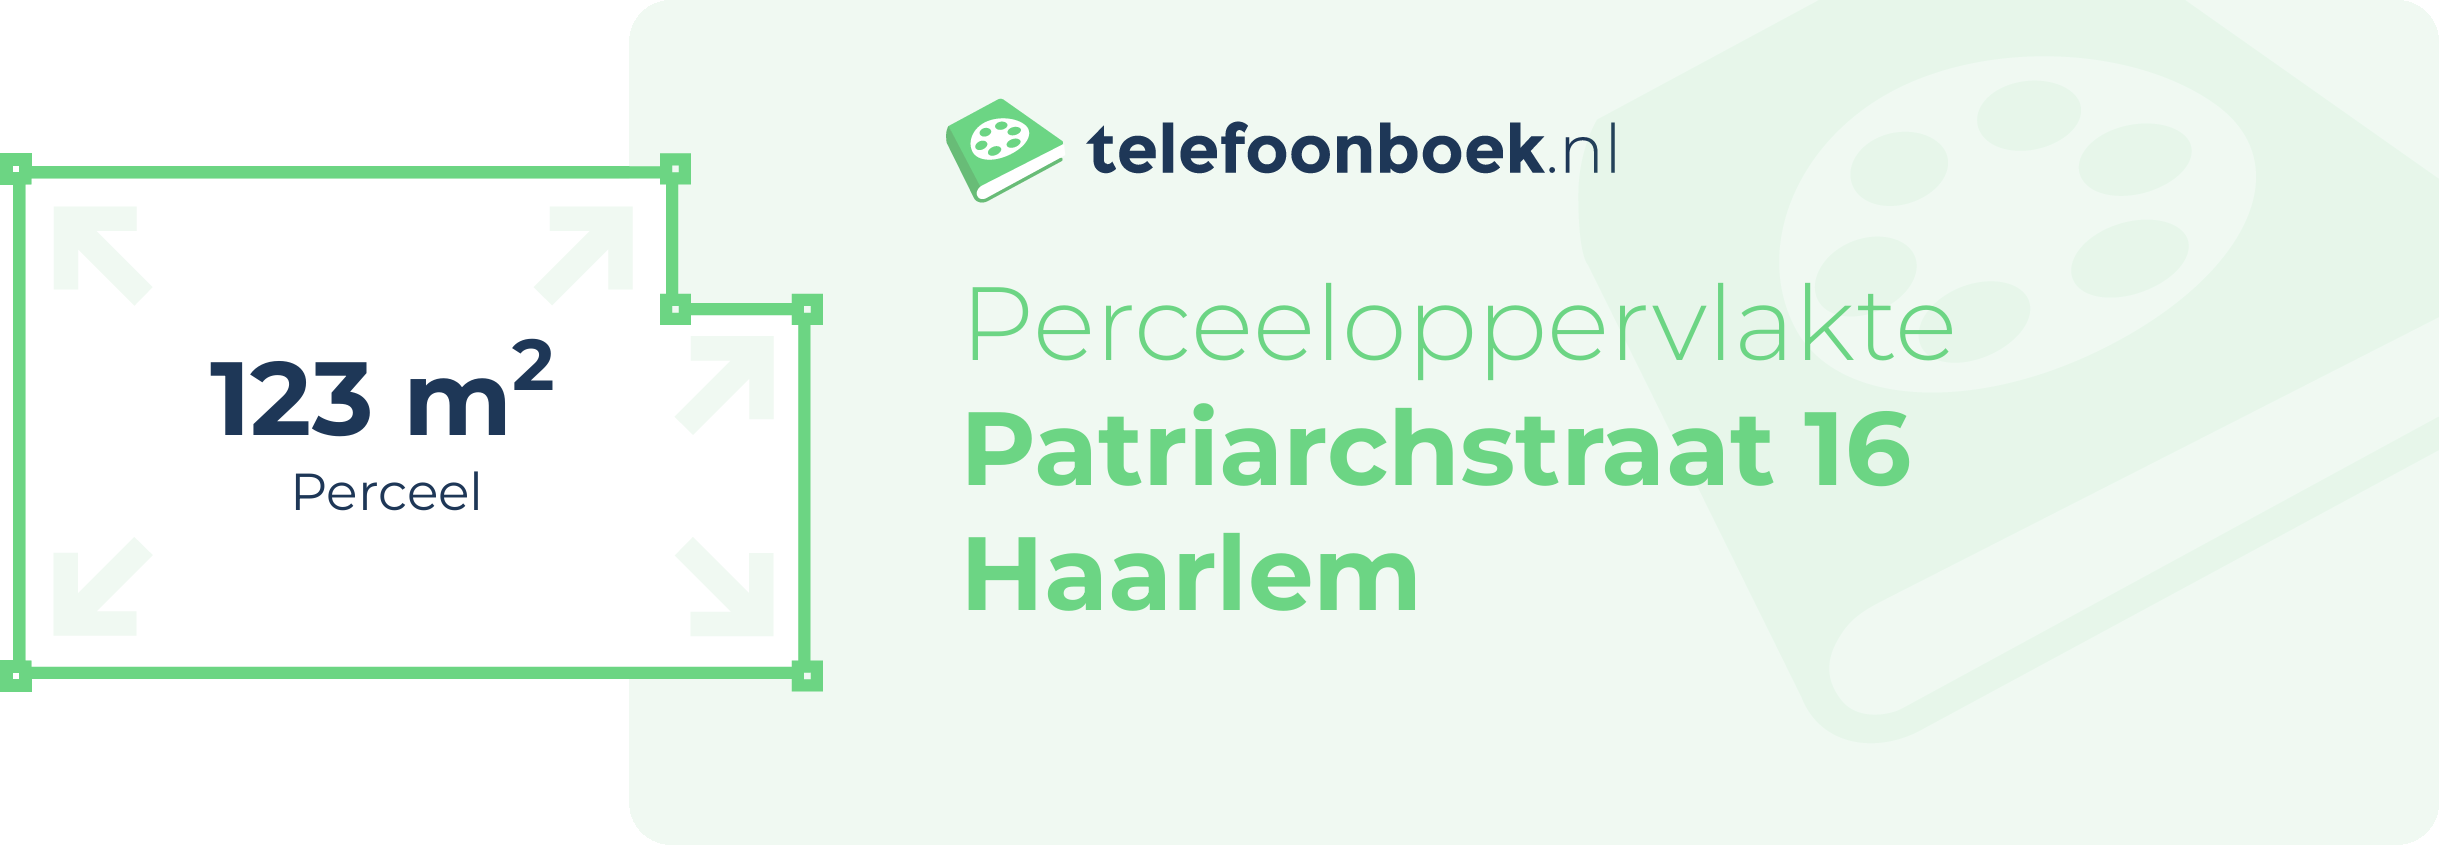 Perceeloppervlakte Patriarchstraat 16 Haarlem